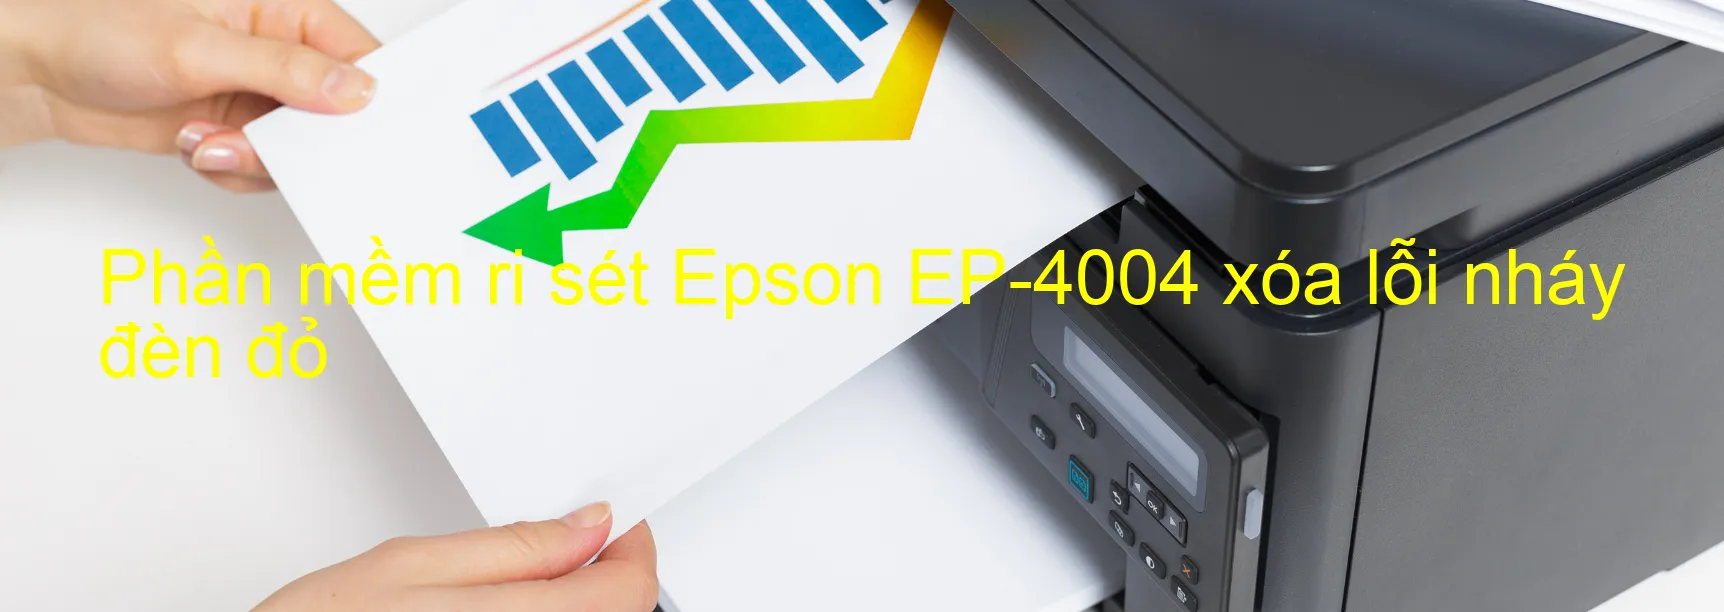 Phần mềm reset Epson EP-4004 xóa lỗi nháy đèn đỏ